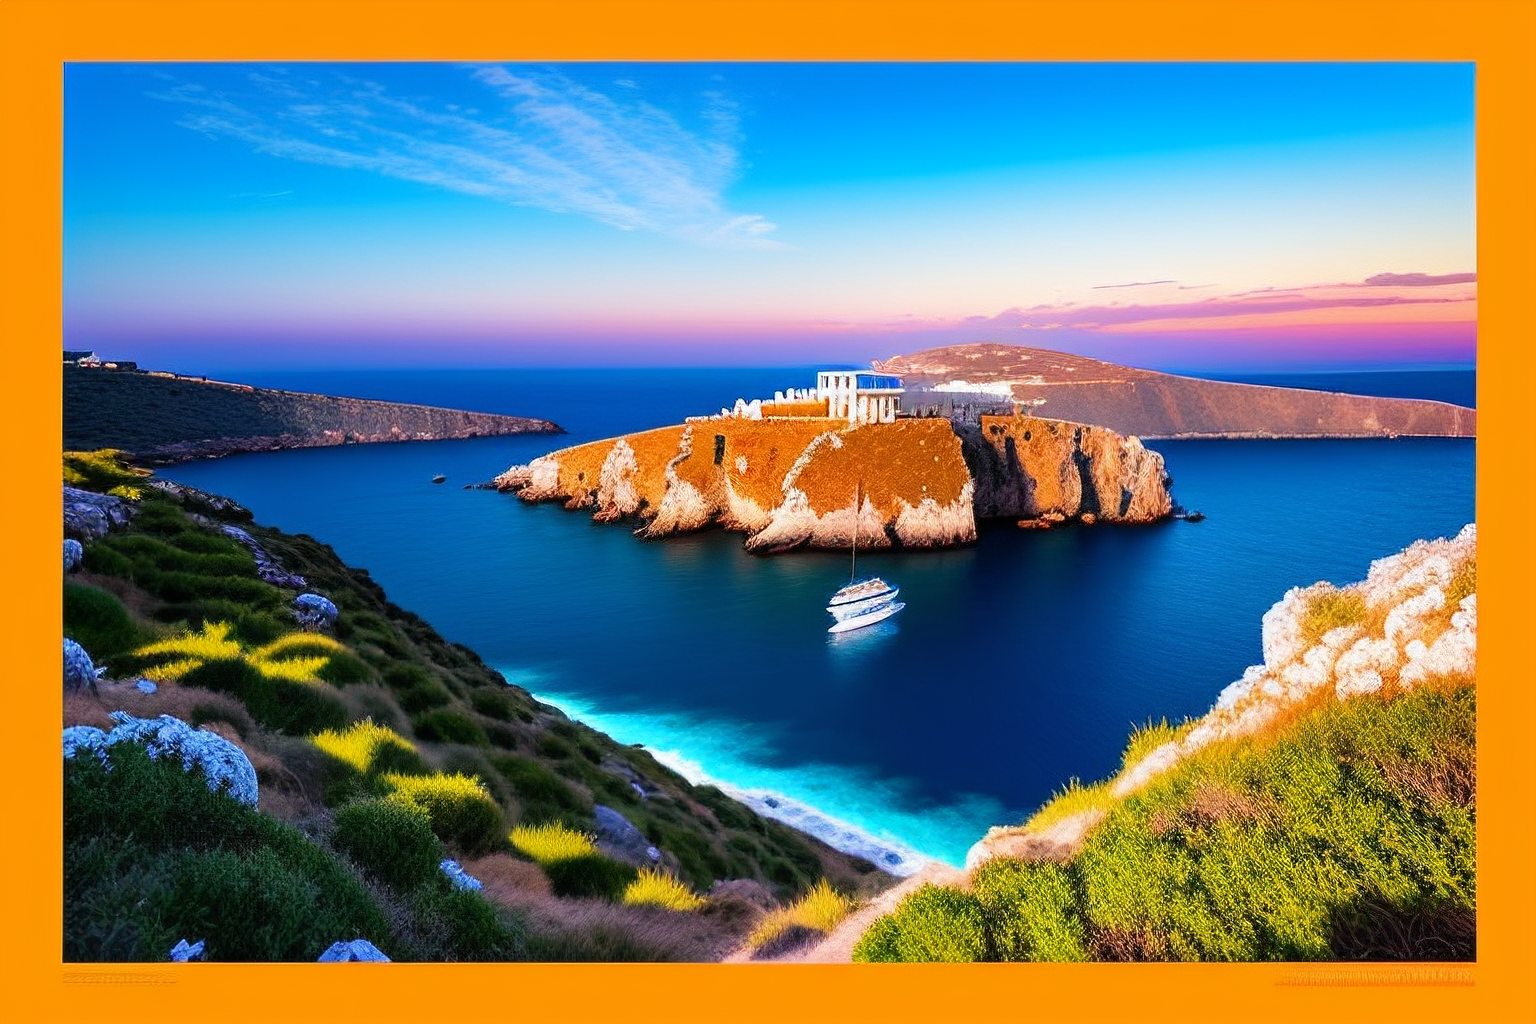 Yunan Adaları Turu için Vize Gerekli mi?